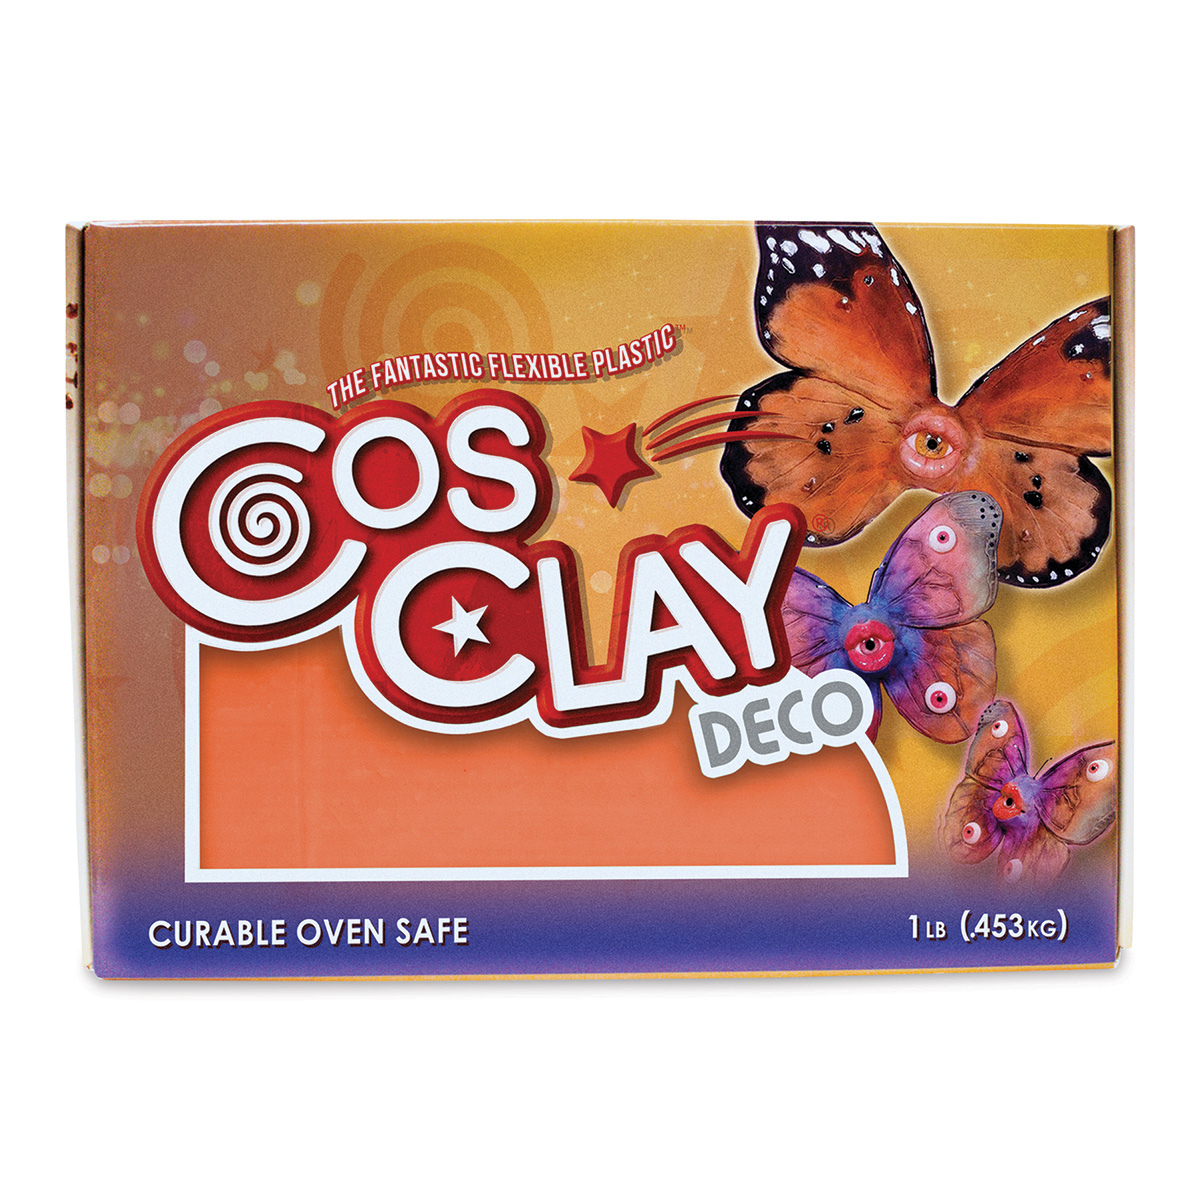 Cosclay Deco Flexible Polymer Clay - Orange, 1 lb